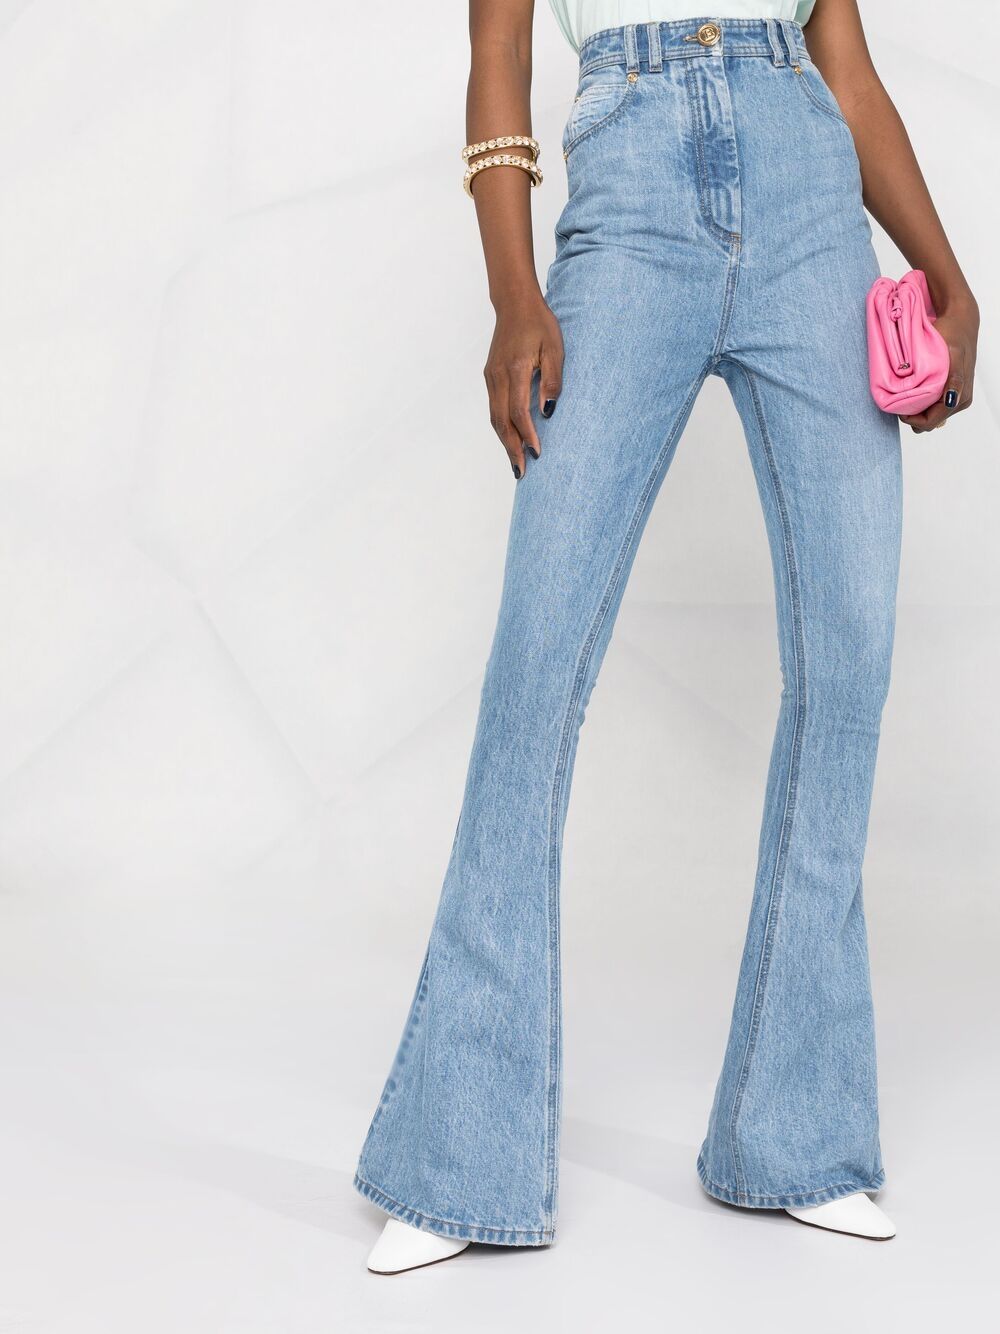 фото Balmain расклешенные джинсы с монограммой